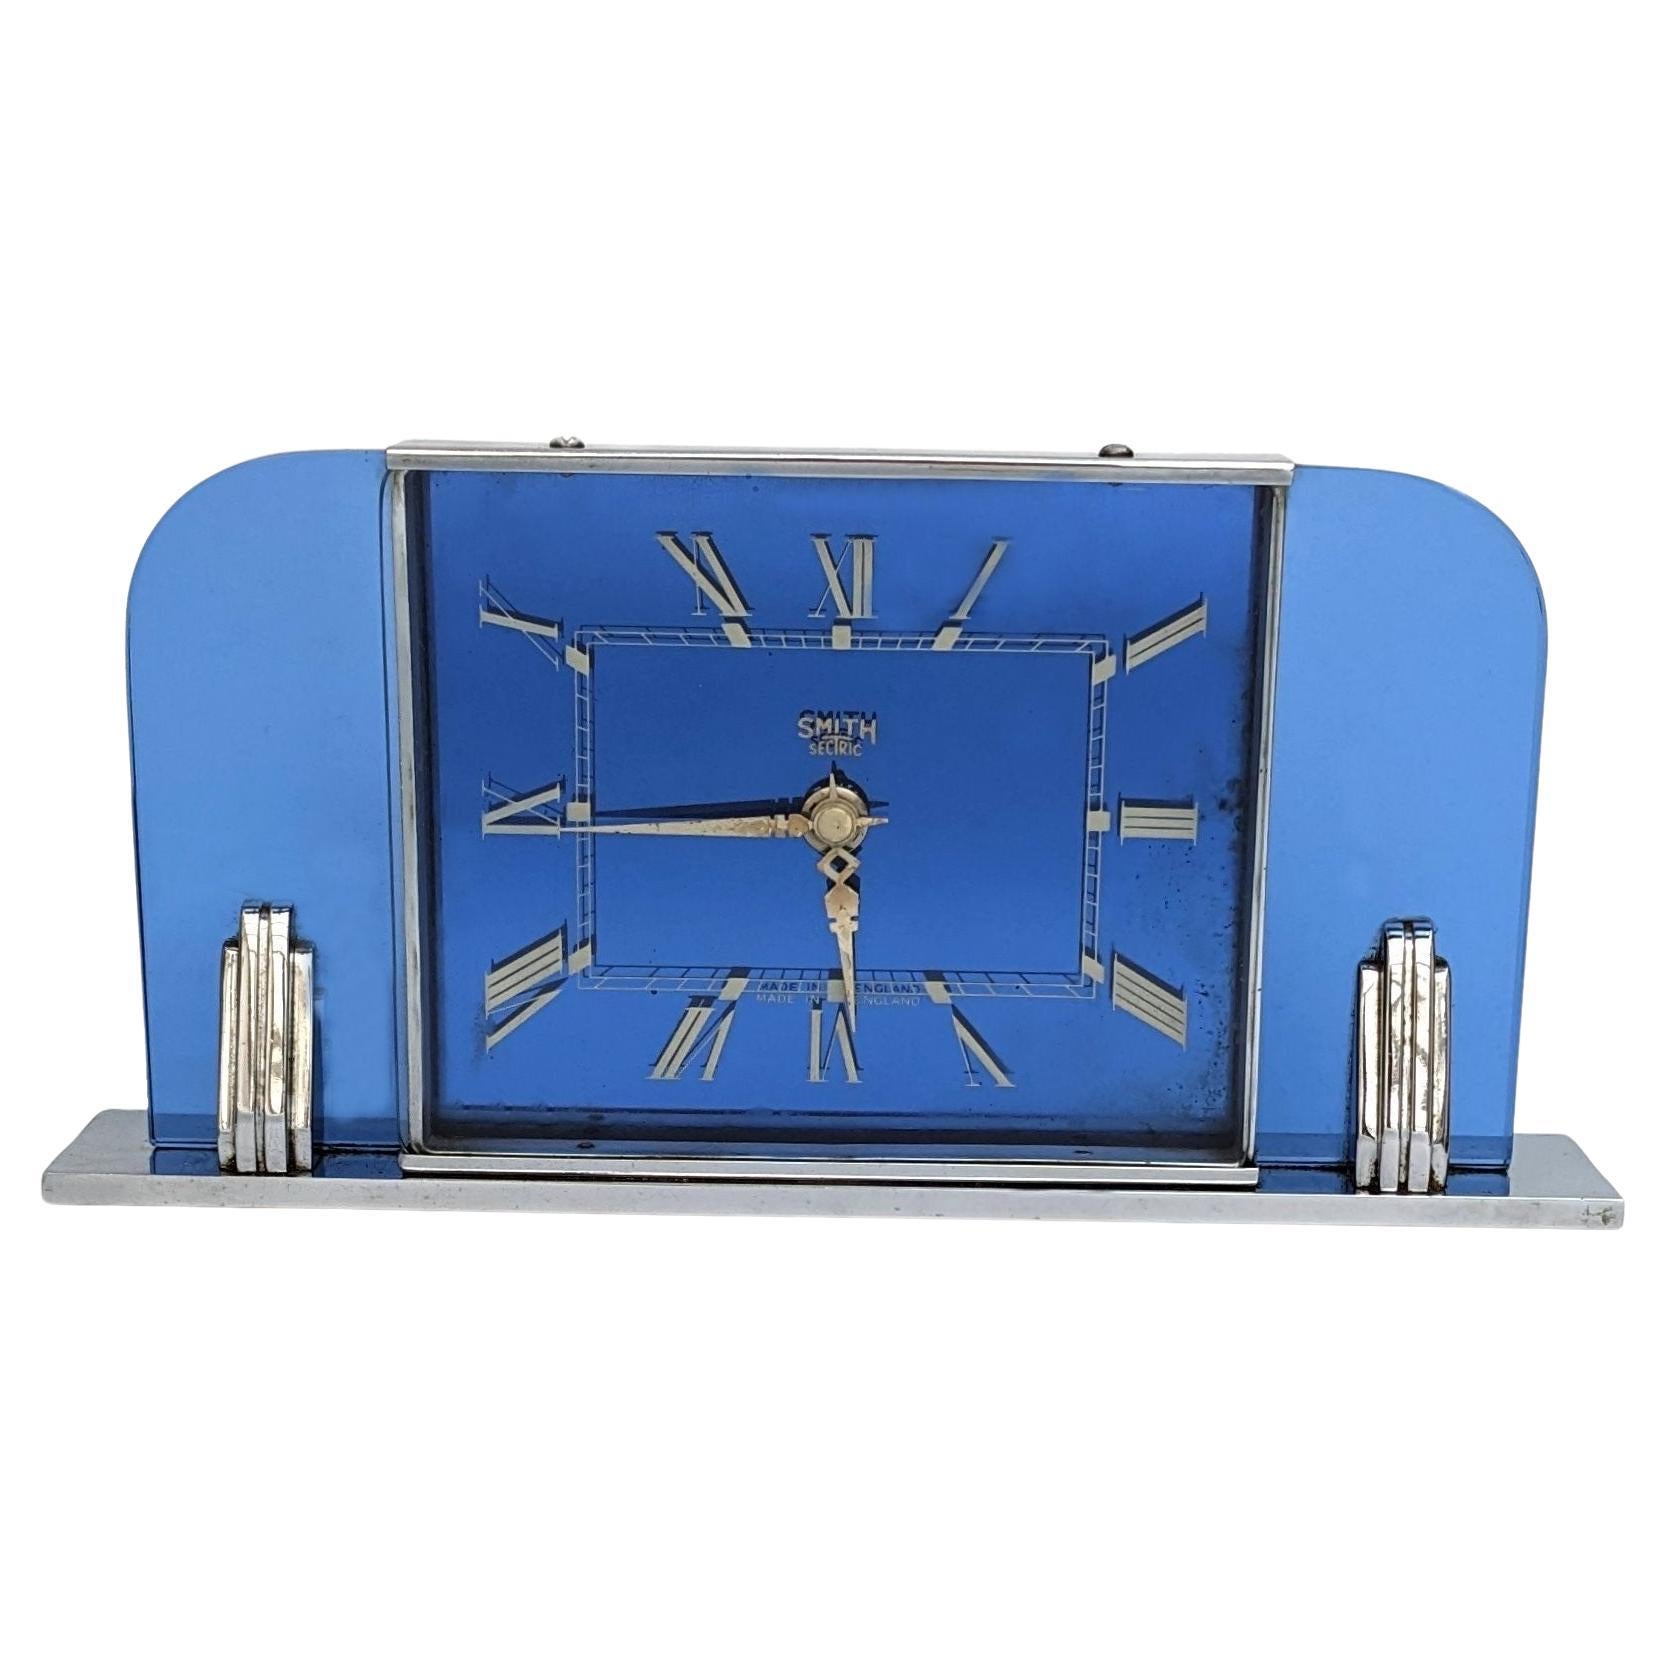 Horloge électrique Art Déco moderniste en verre bleu par Smiths Clockmakers, vers 1930